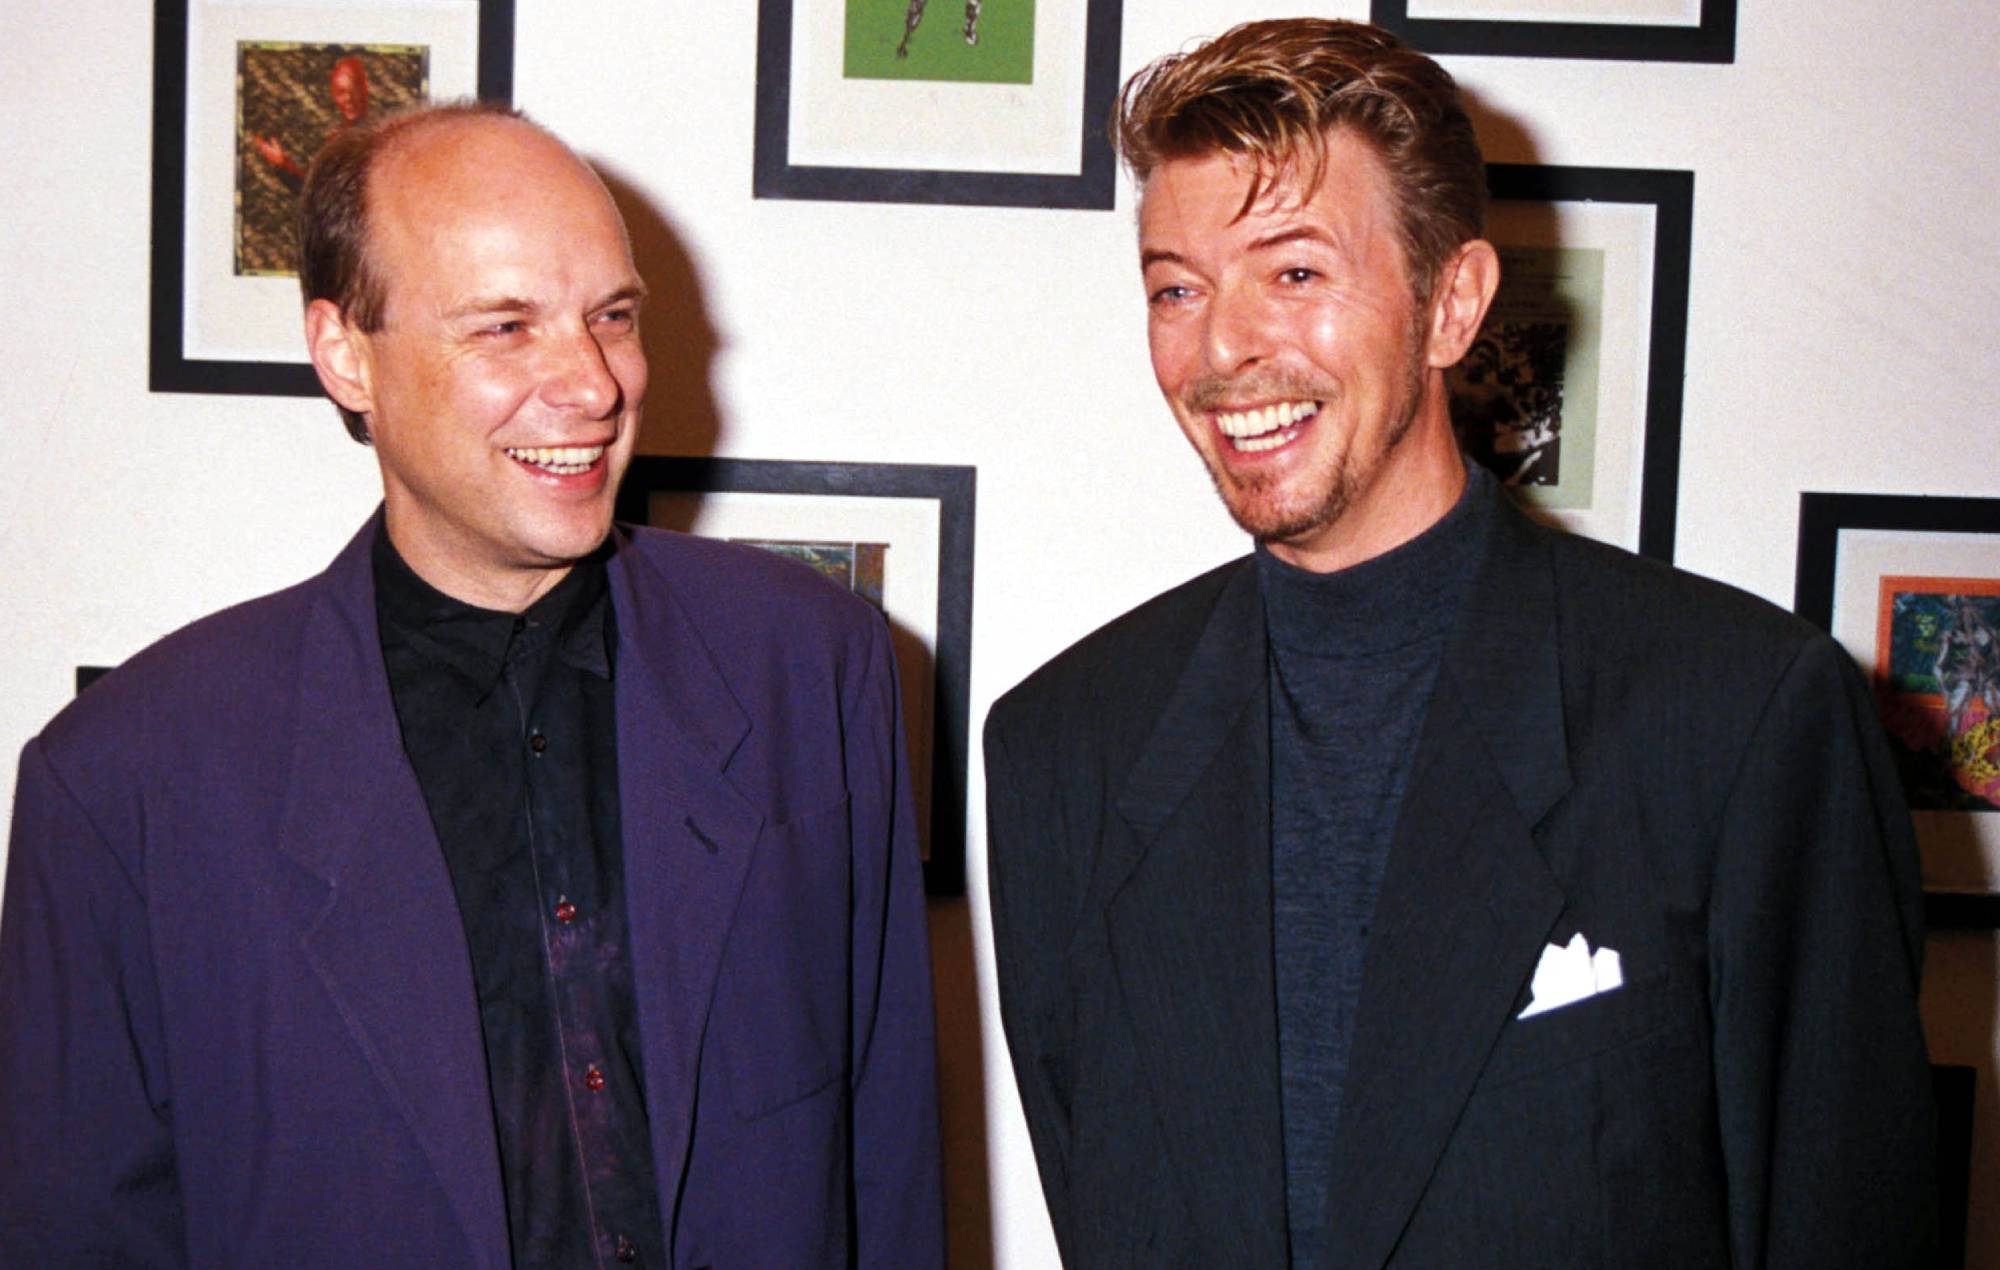 Brian Eno habla de la remezcla de David Bowie en su "poderoso" nuevo disco "Get Real" para combatir el cambio climático